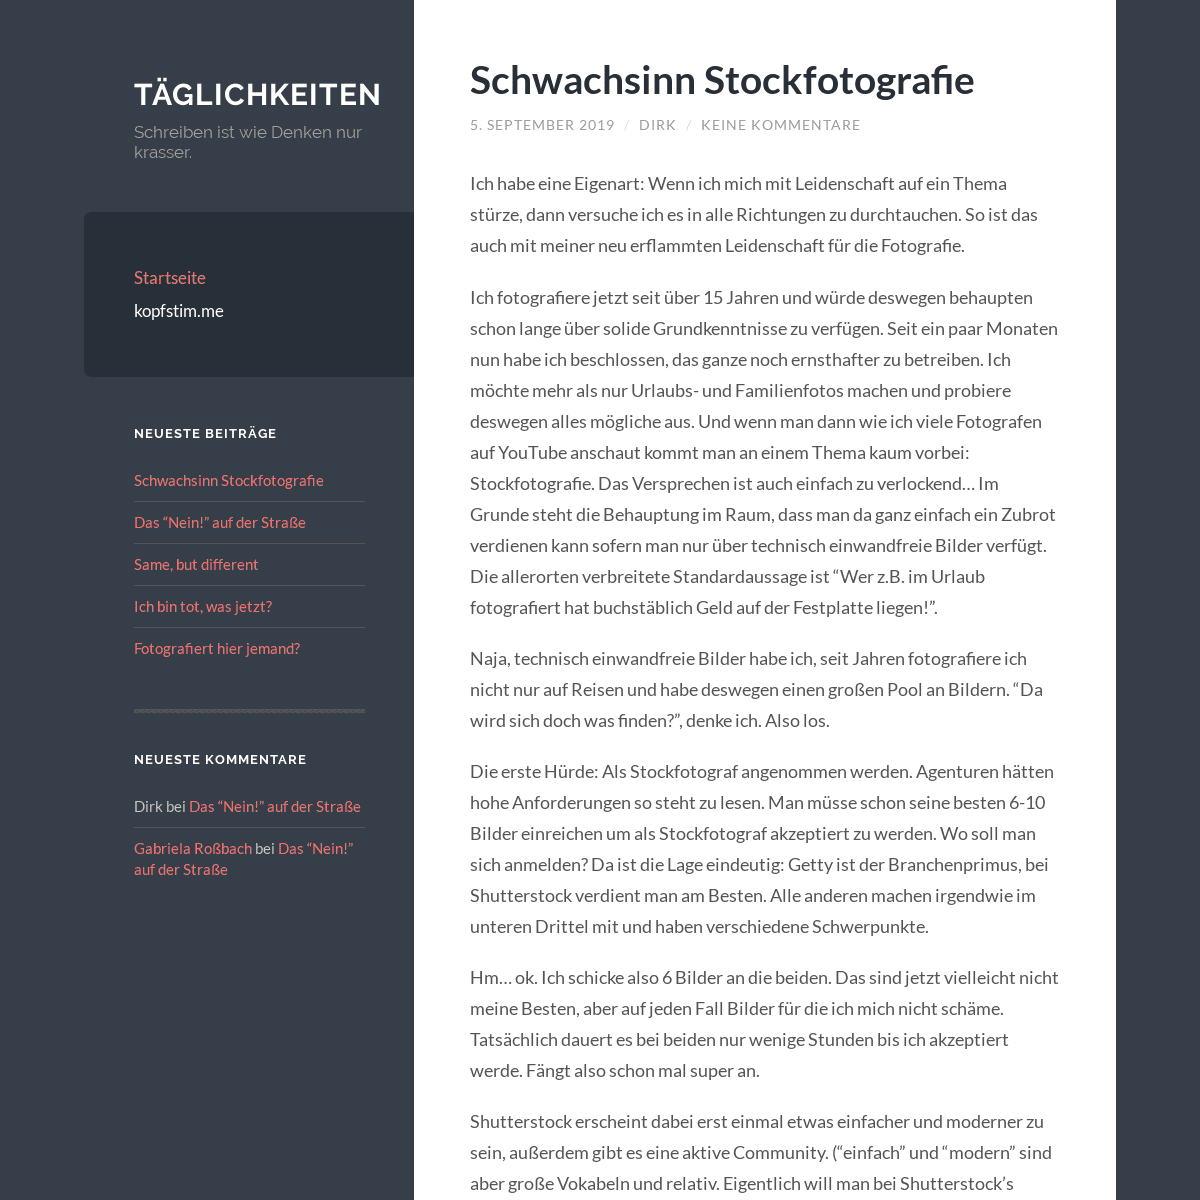 A complete backup of dauerstauner.net